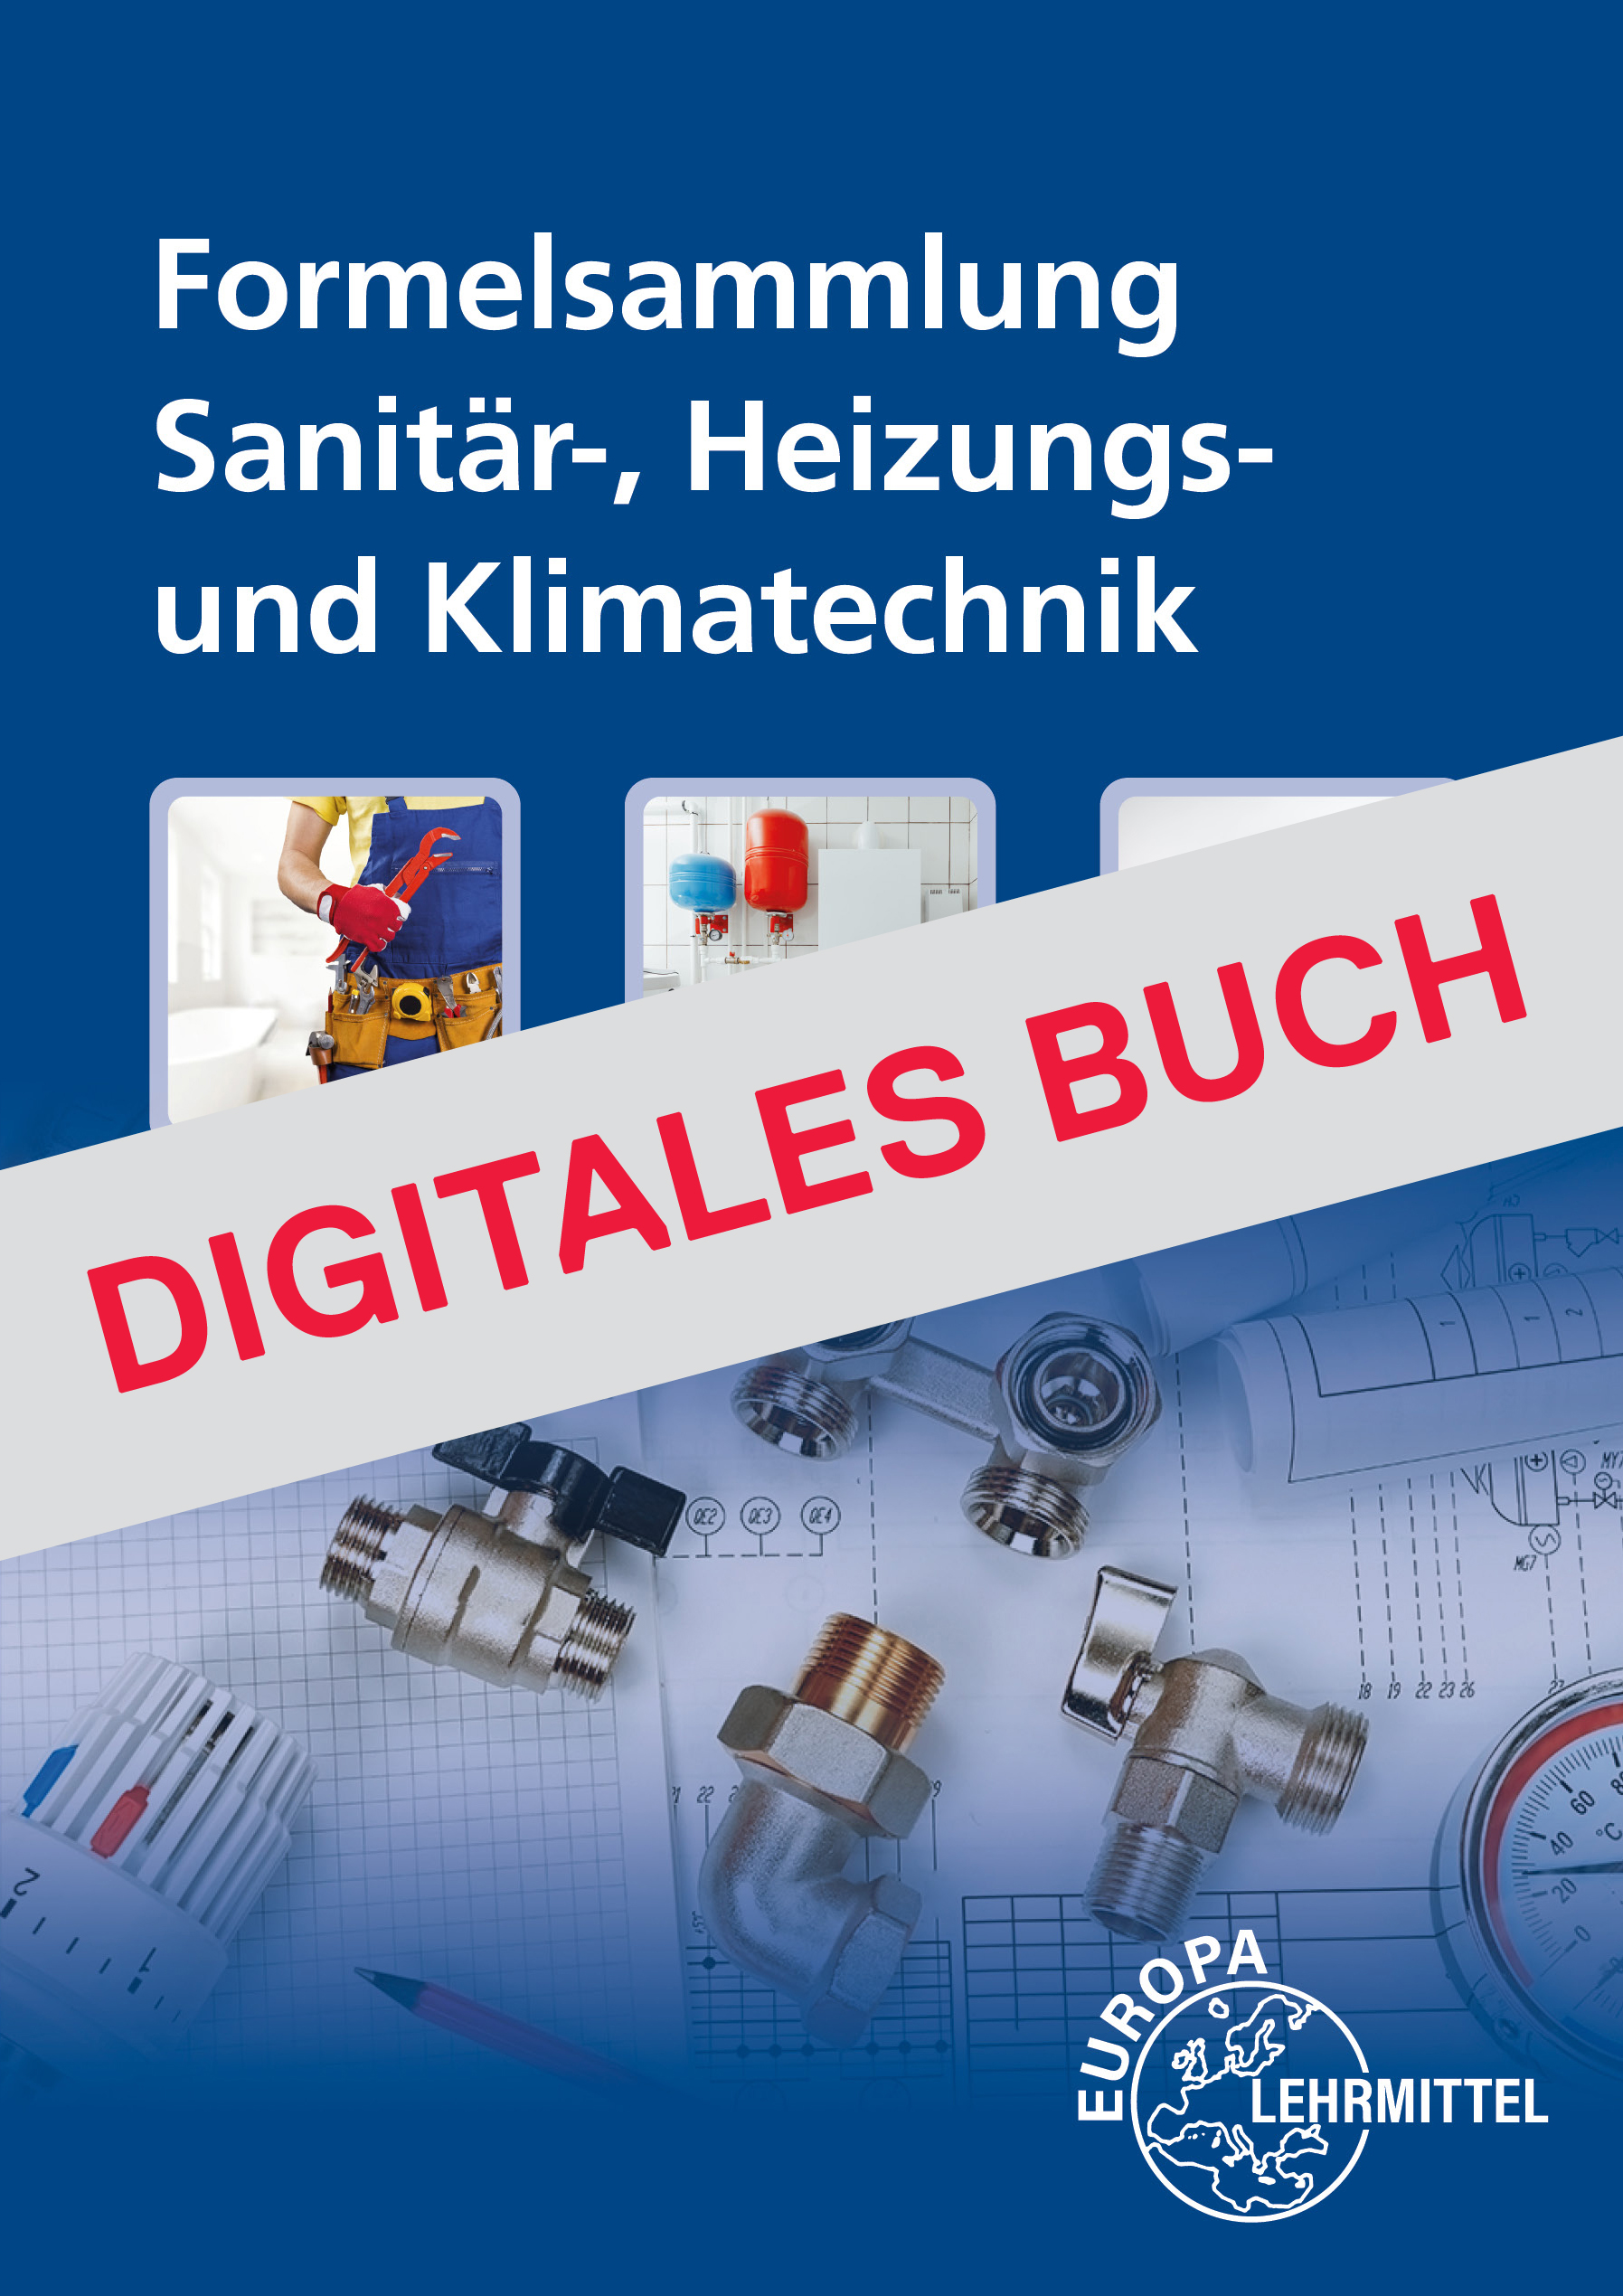 Formelsammlung Sanitär-, Heizungs- und Klimatechnik - Digitales Buch